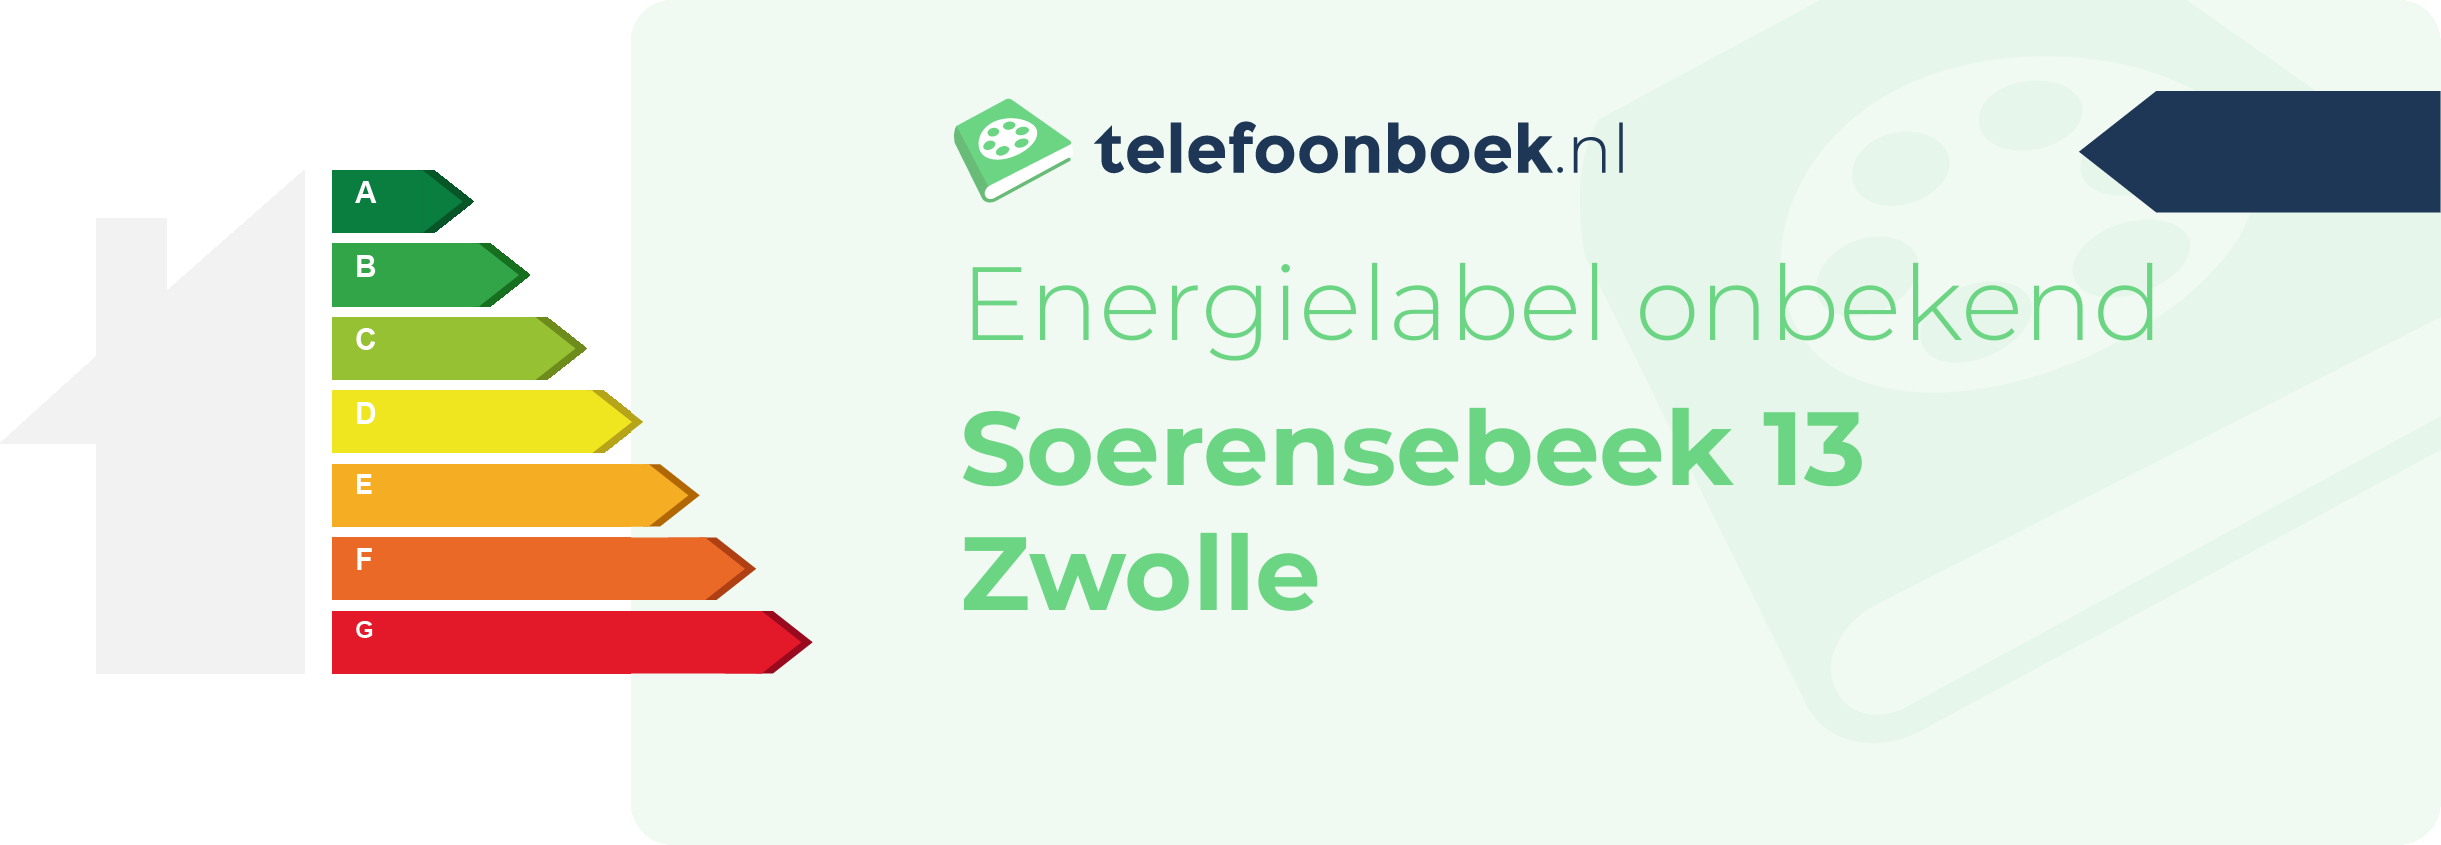 Energielabel Soerensebeek 13 Zwolle